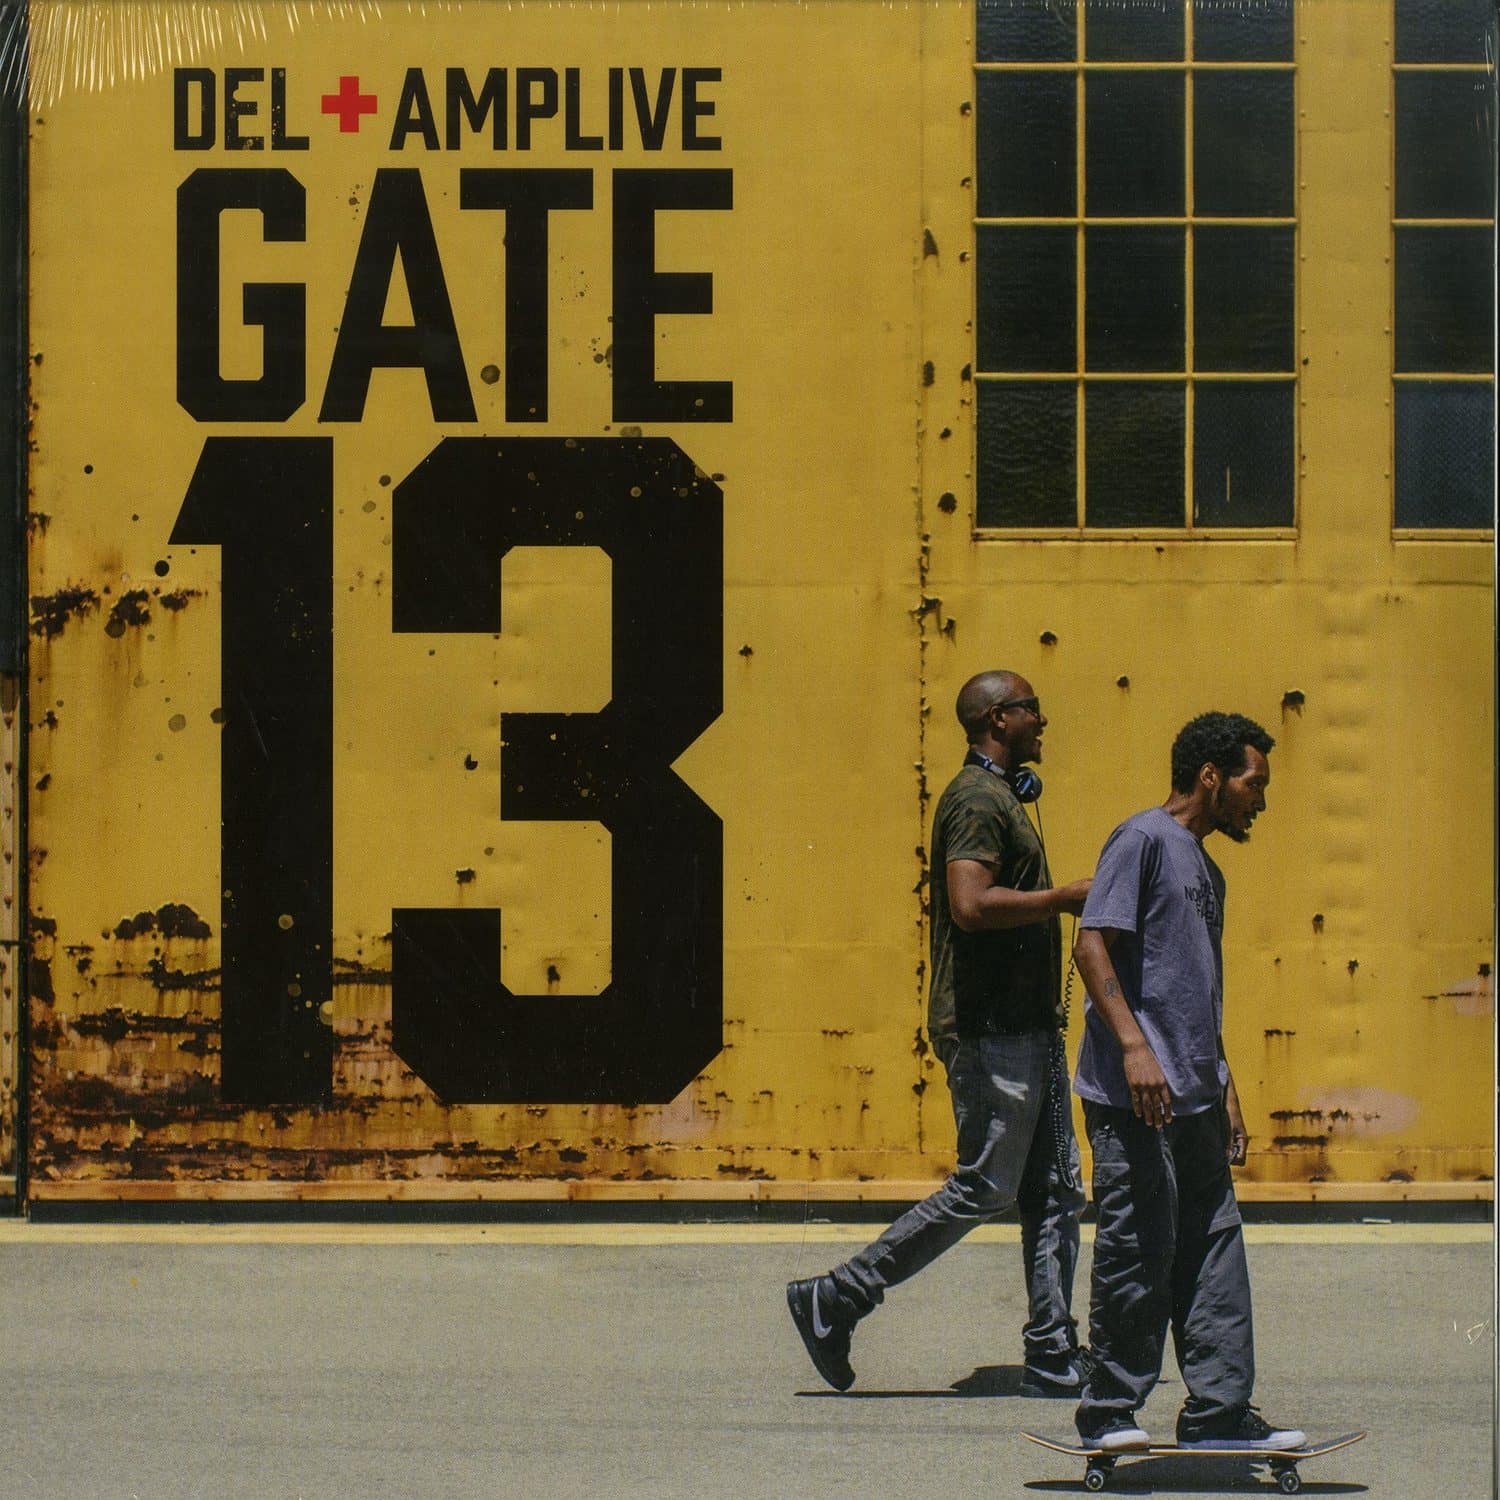 Del & AMP Live - GATE 13 